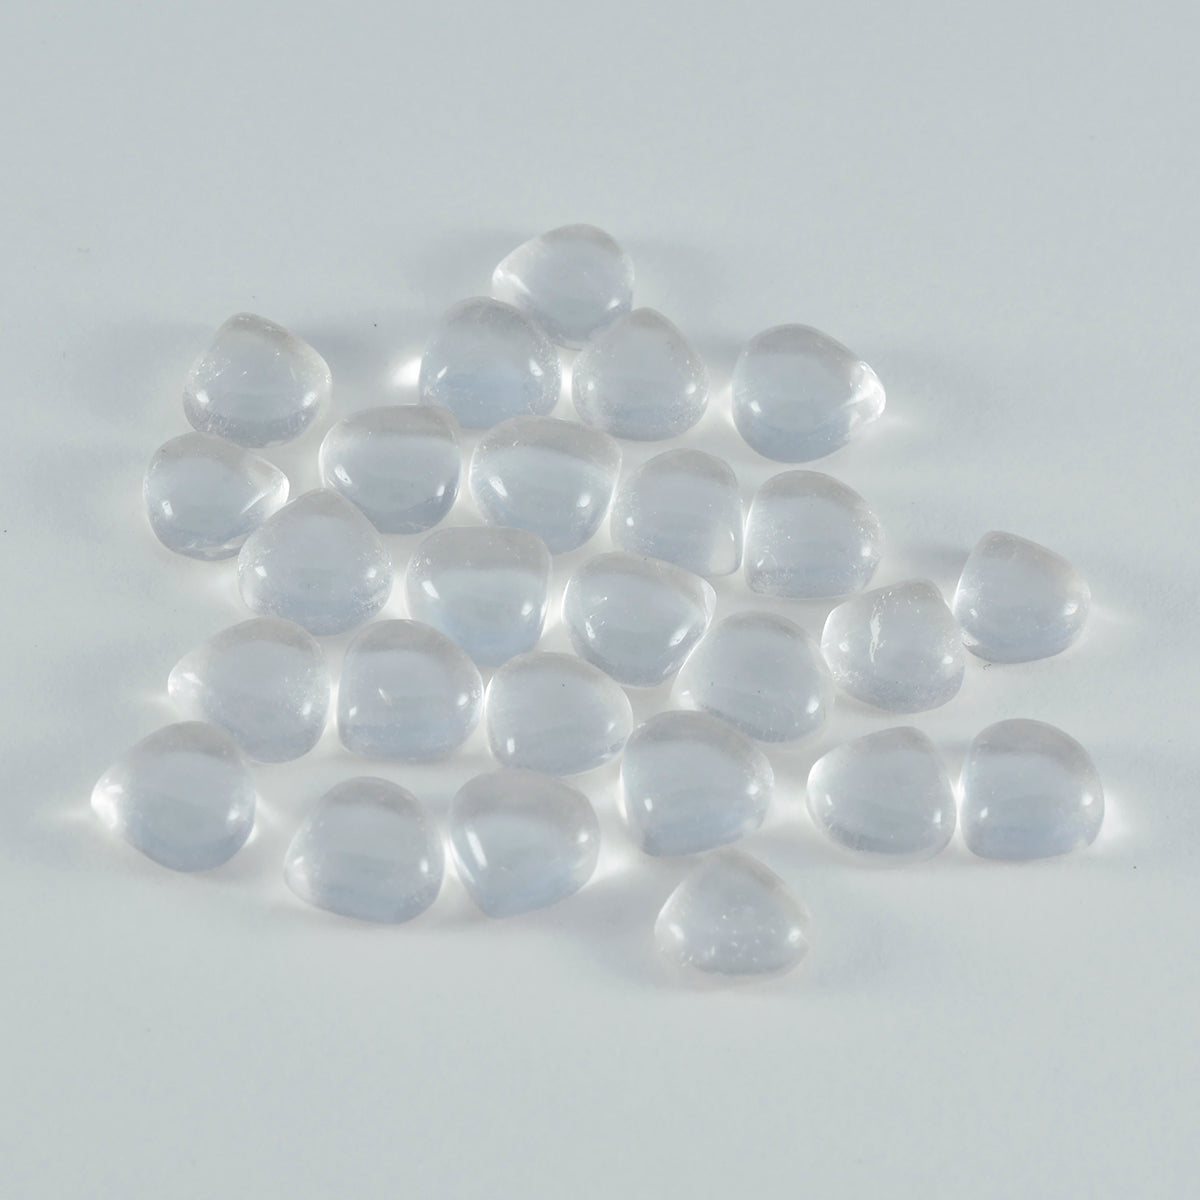 Riyogems – cabochon de quartz en cristal blanc, 4x4mm, en forme de cœur, pierres précieuses de qualité douce, 1 pièce